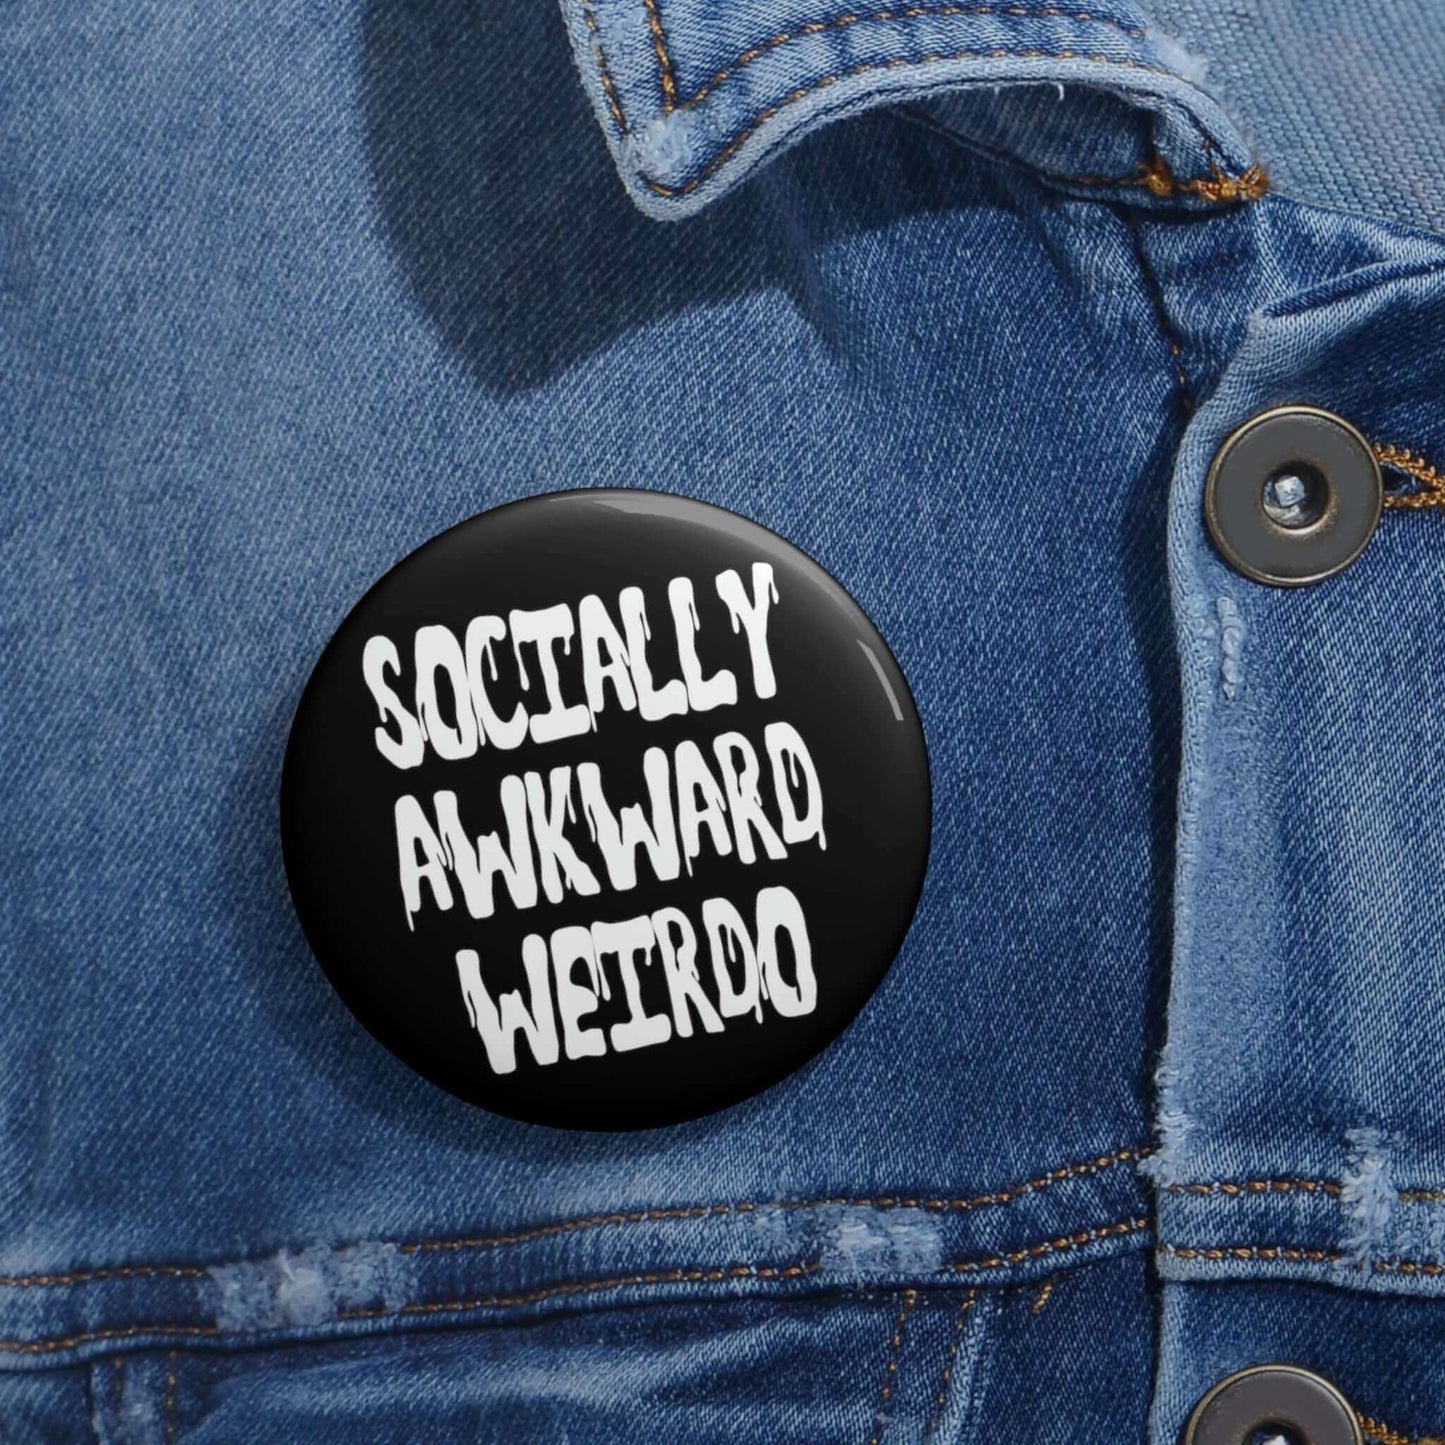 Socially awkward weirdo pinback button